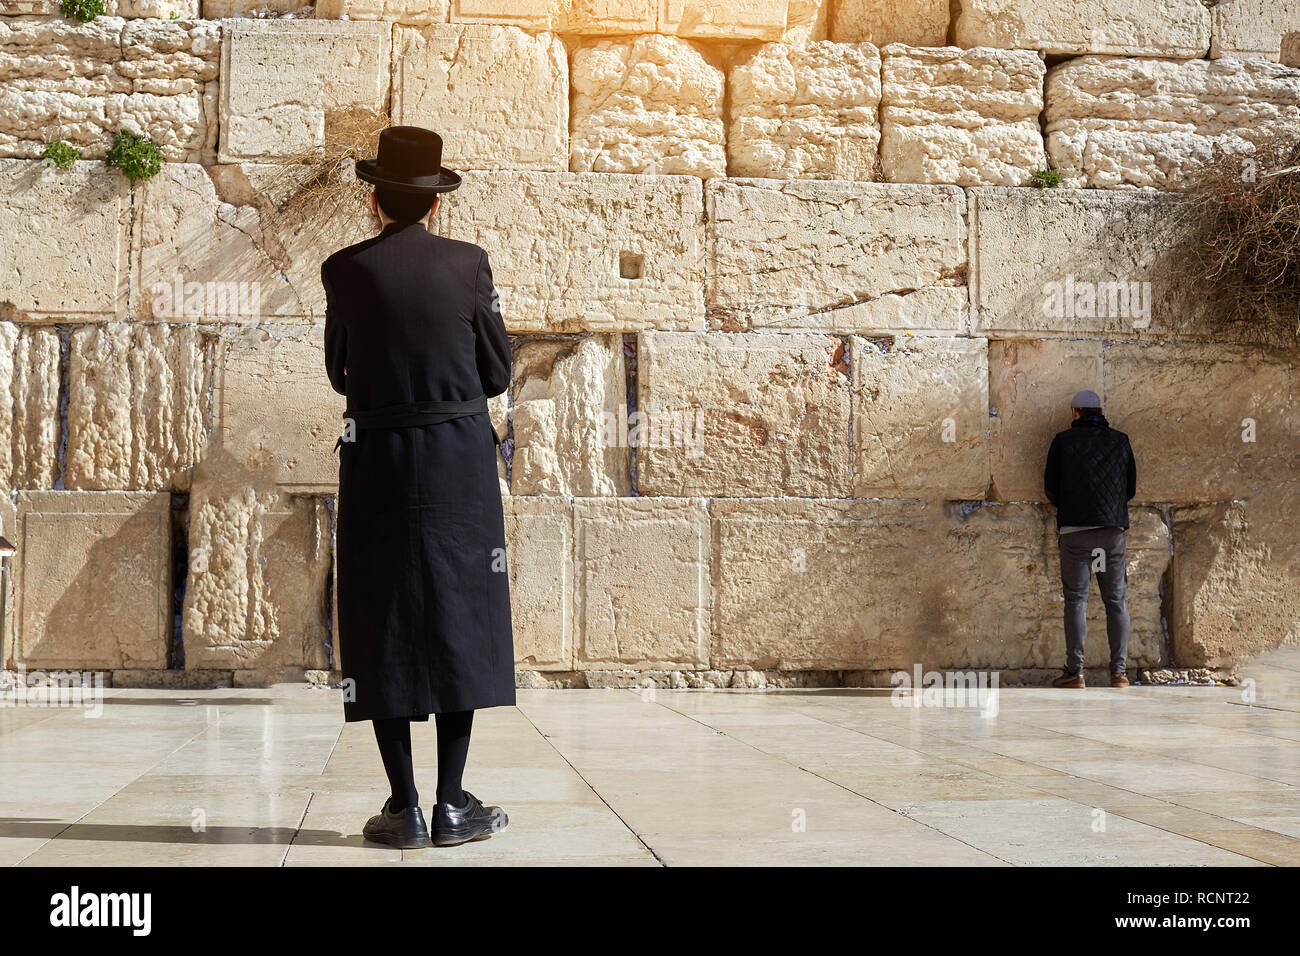 Jérusalem, Israël, le 13 janvier 2019, l'homme juif ultra-orthodoxe, vêtus de noir, se dresse sur la place du Mur de l'Ouest et l'air de mur ouest Banque D'Images